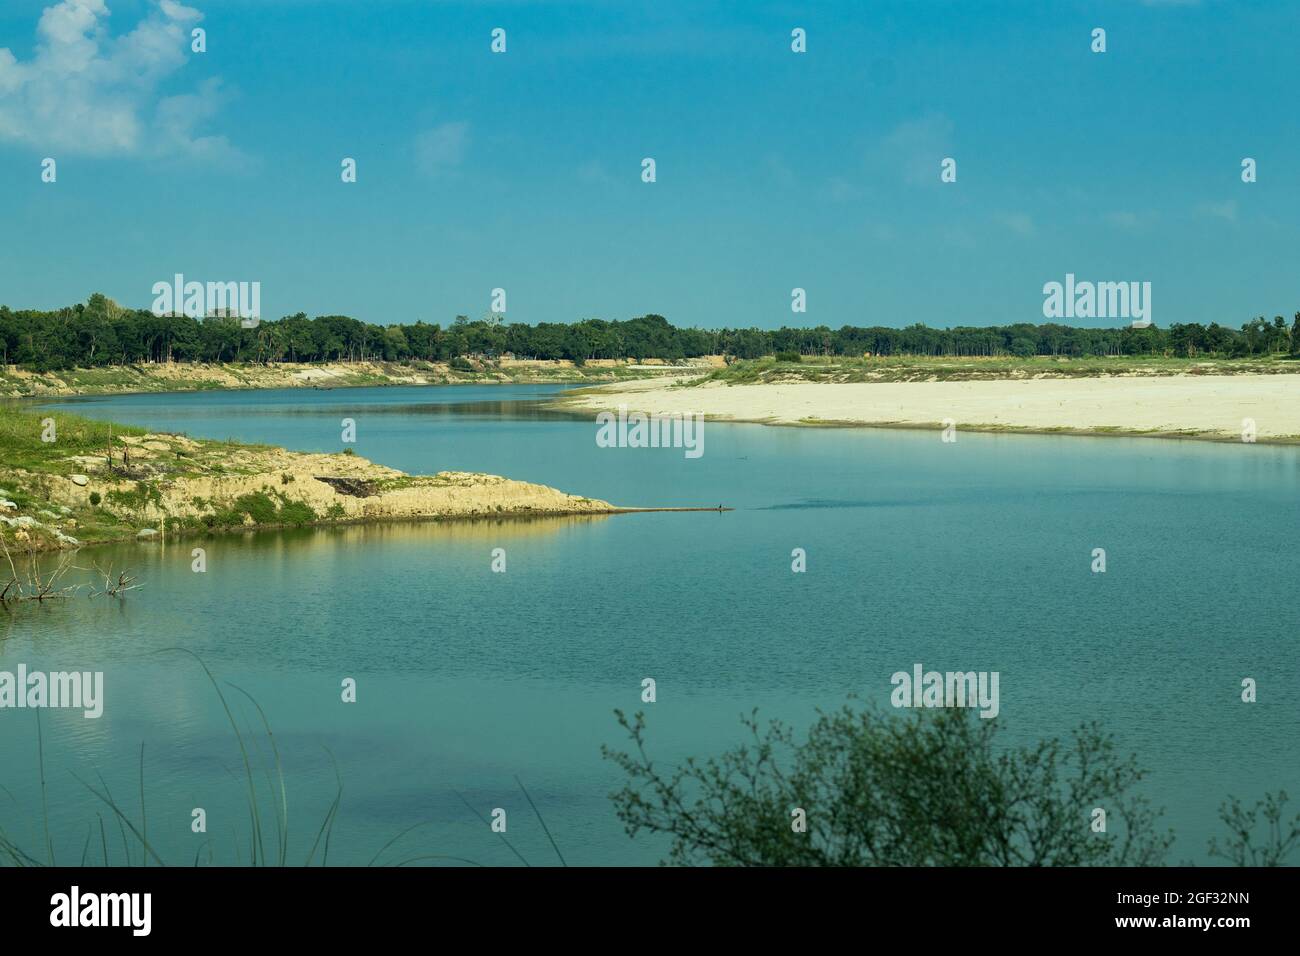 La plus grande vue sur le paysage de la petite rivière asiatique et vert des deux côtés de la rivière et ciel bleu avec nuage blanc Banque D'Images